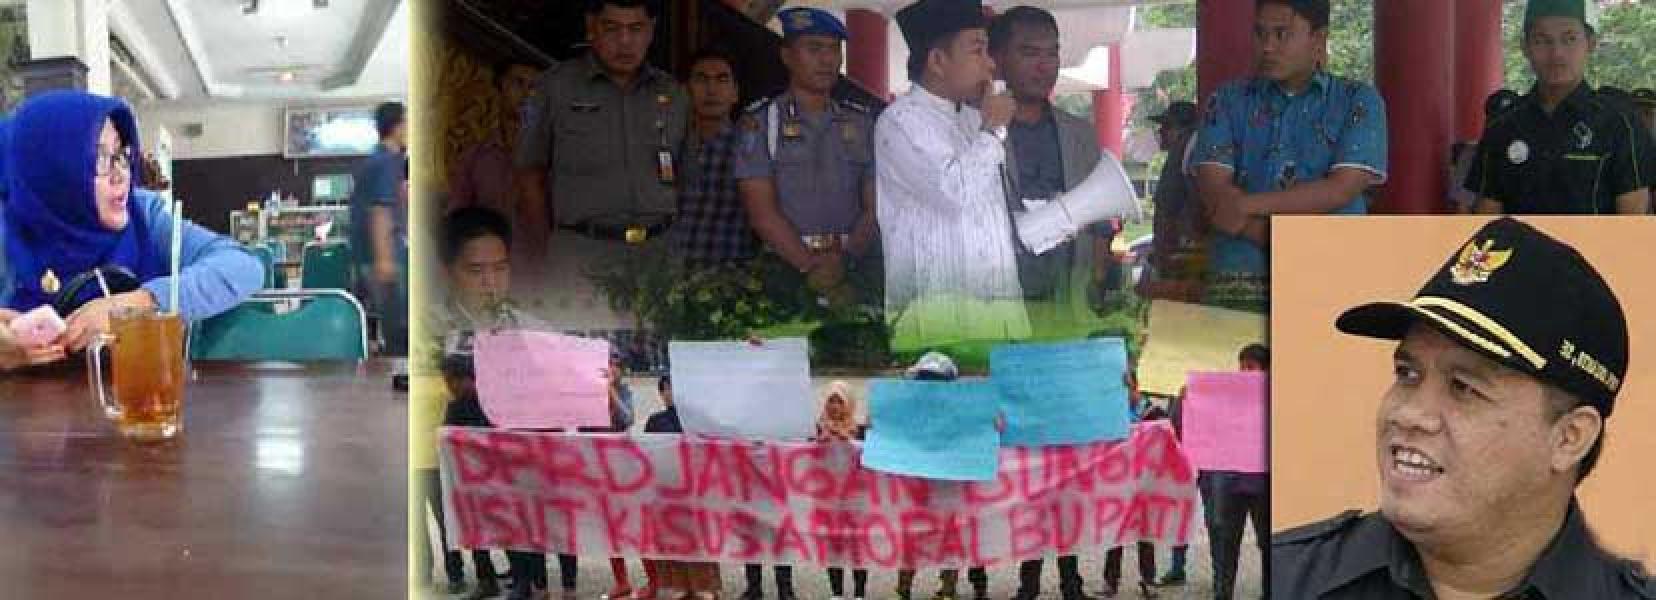 DPRD Inhu Segera Pleno Terkait Dugan Skandal Sex Bupati